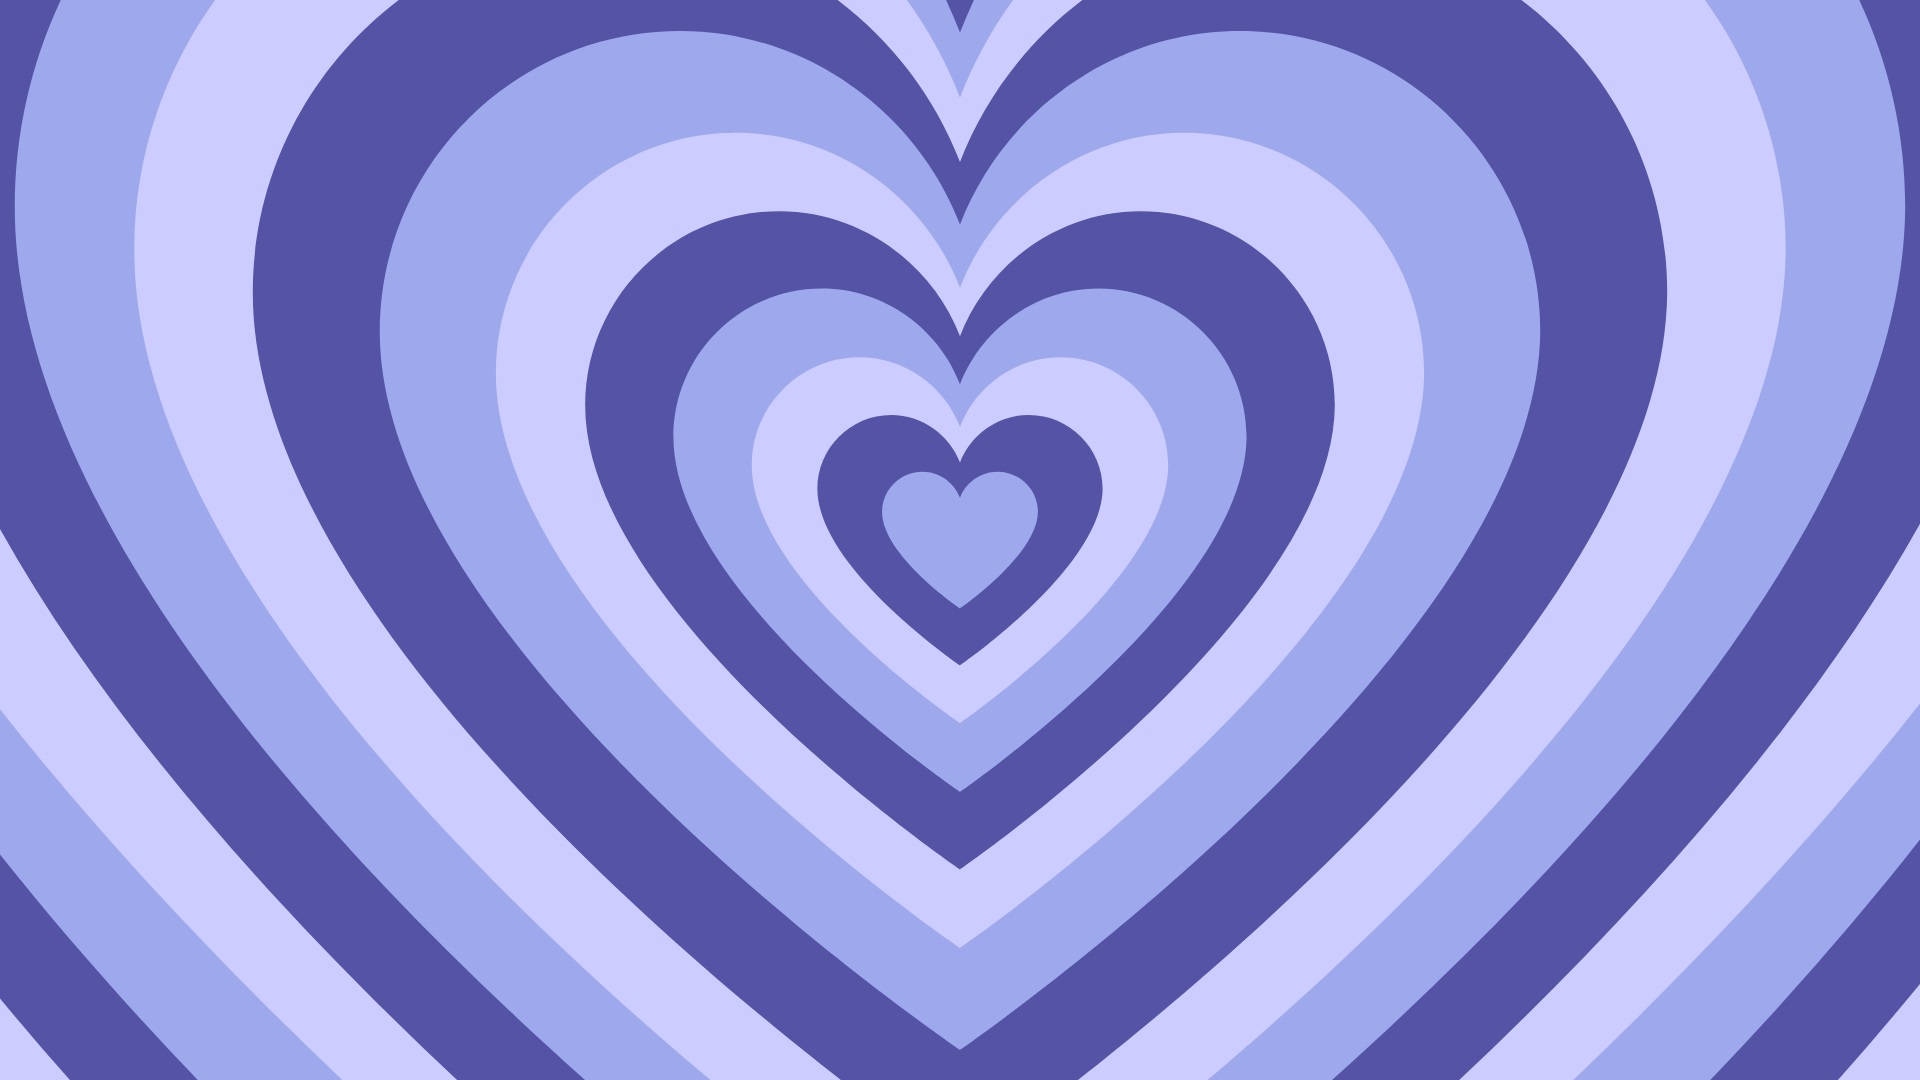 Fundode Tela De Coração Retrô Em Tons De Azul-violeta. Papel de Parede